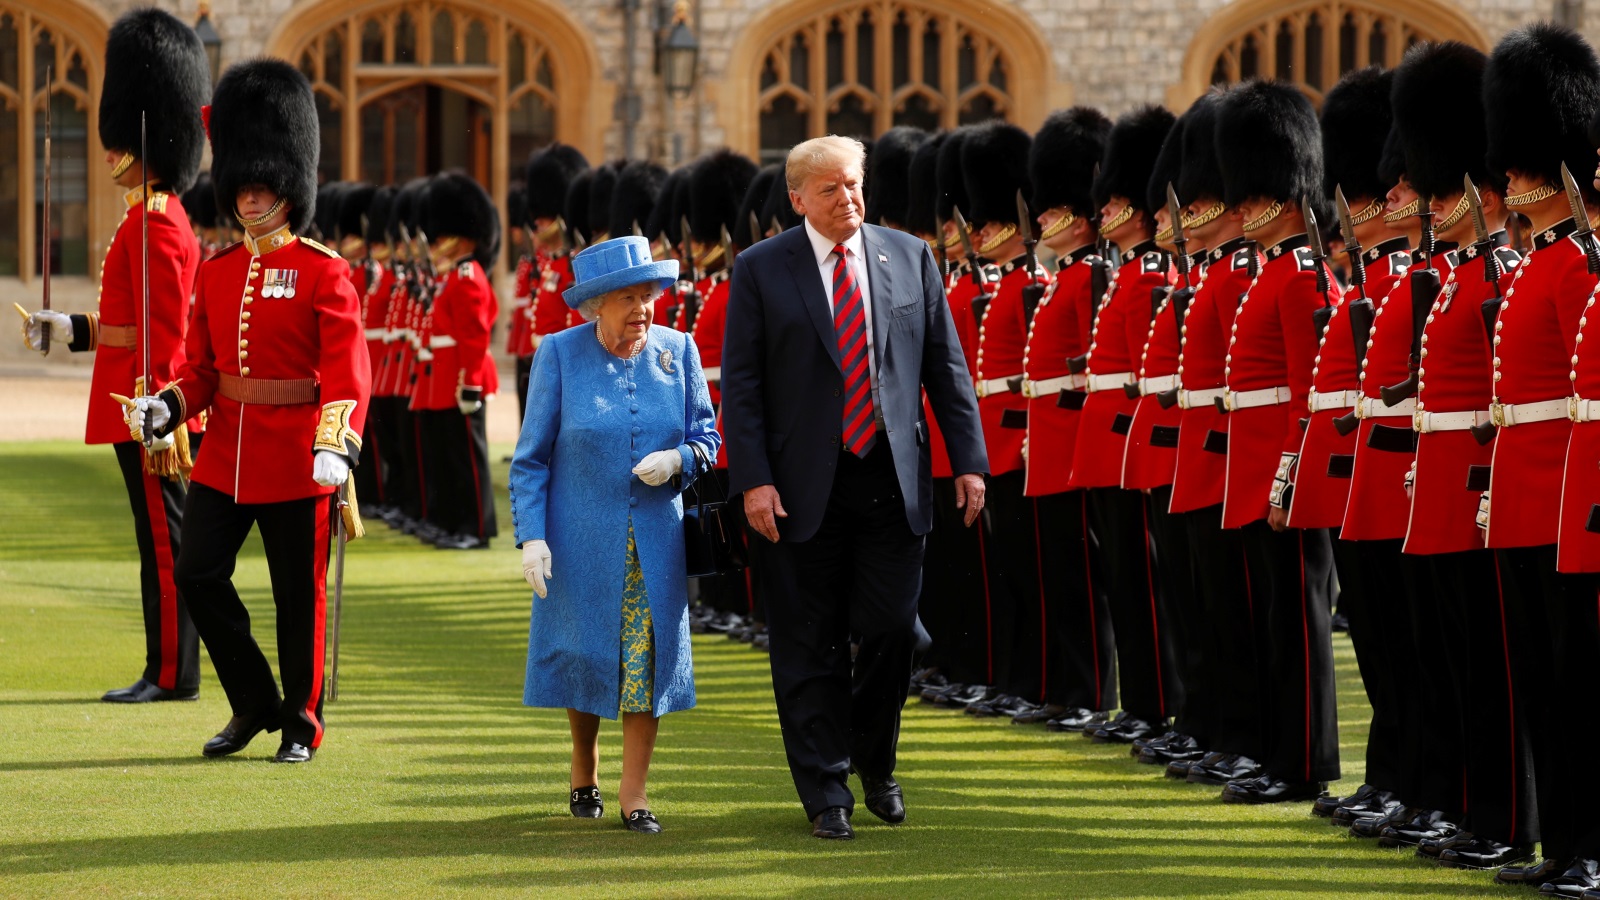 ترامب التقى خلال الزيارة الملكة إليزابيث 